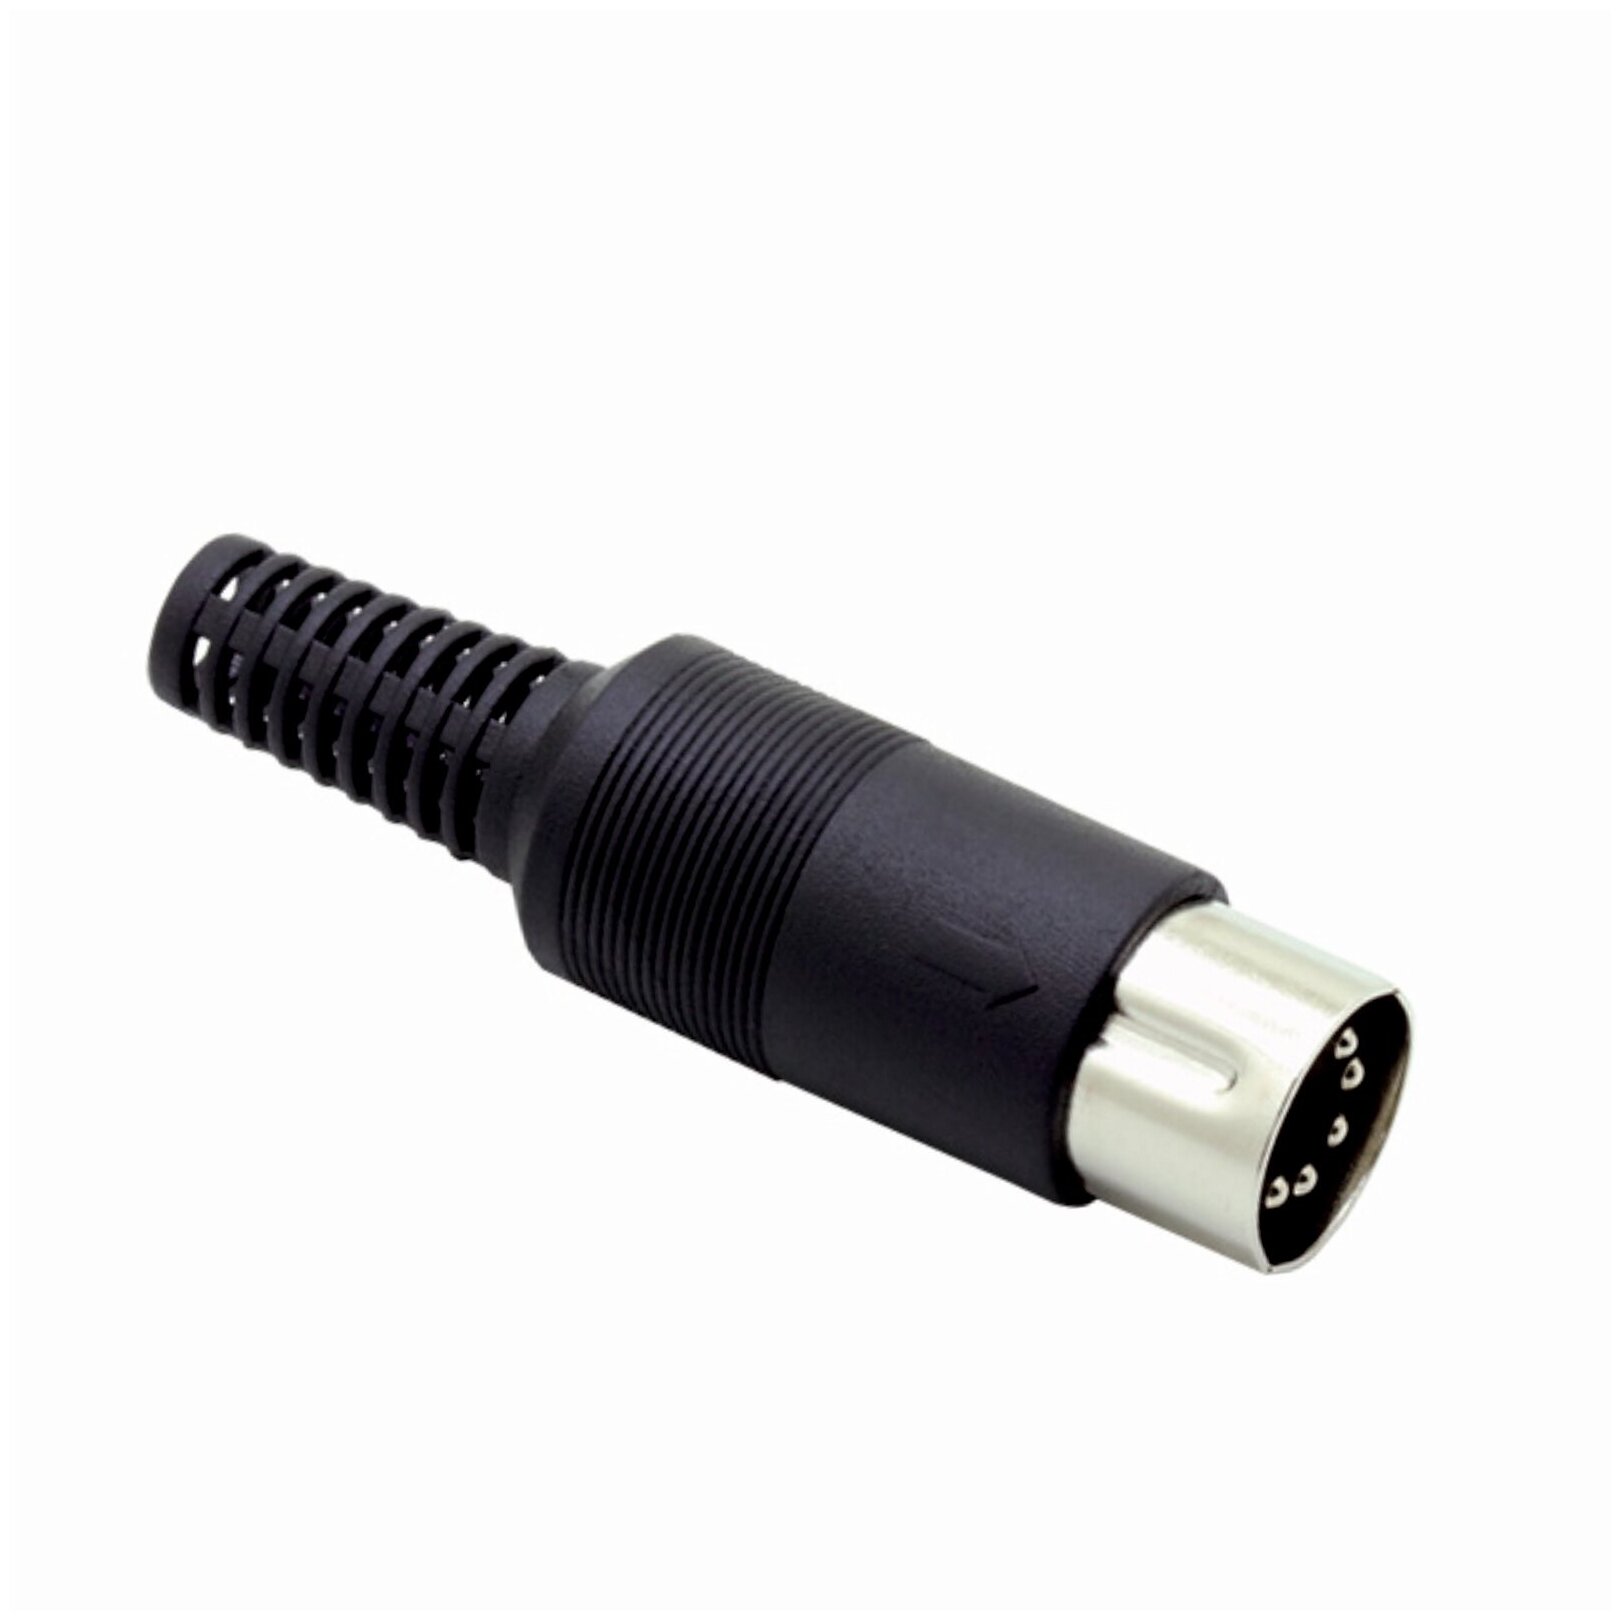 Разъем штекер DIN 5 pin (папа) на кабель, пластик